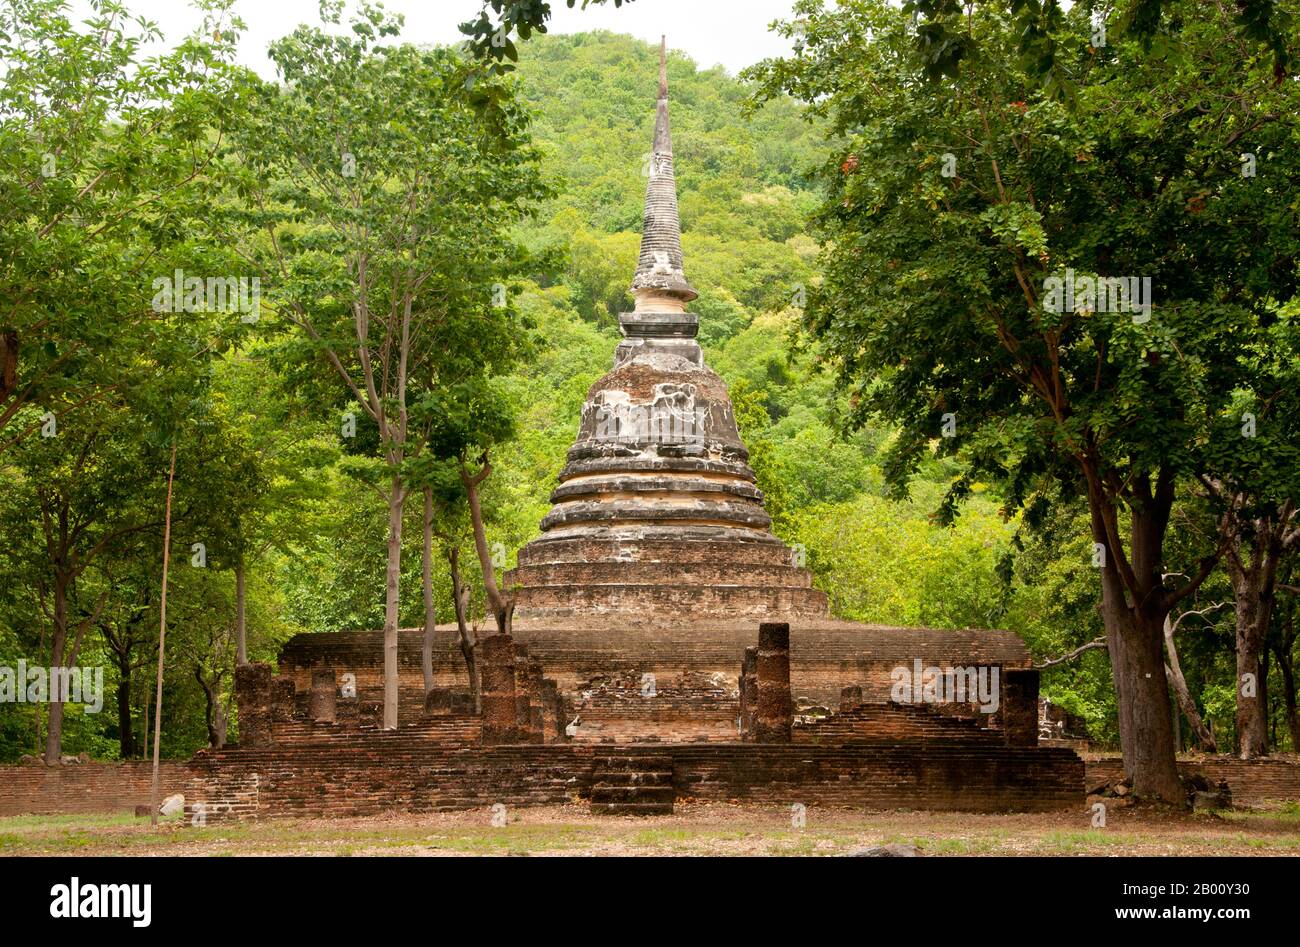 Tailandia: Wat Chedi Ngarm, Parque Histórico de Sukhothai. Sukhothai, que literalmente significa 'desove de la felicidad', fue la capital del Reino de Sukhothai y fue fundada en 1238. Fue la capital del Imperio tailandés durante aproximadamente 140 años. Foto de stock